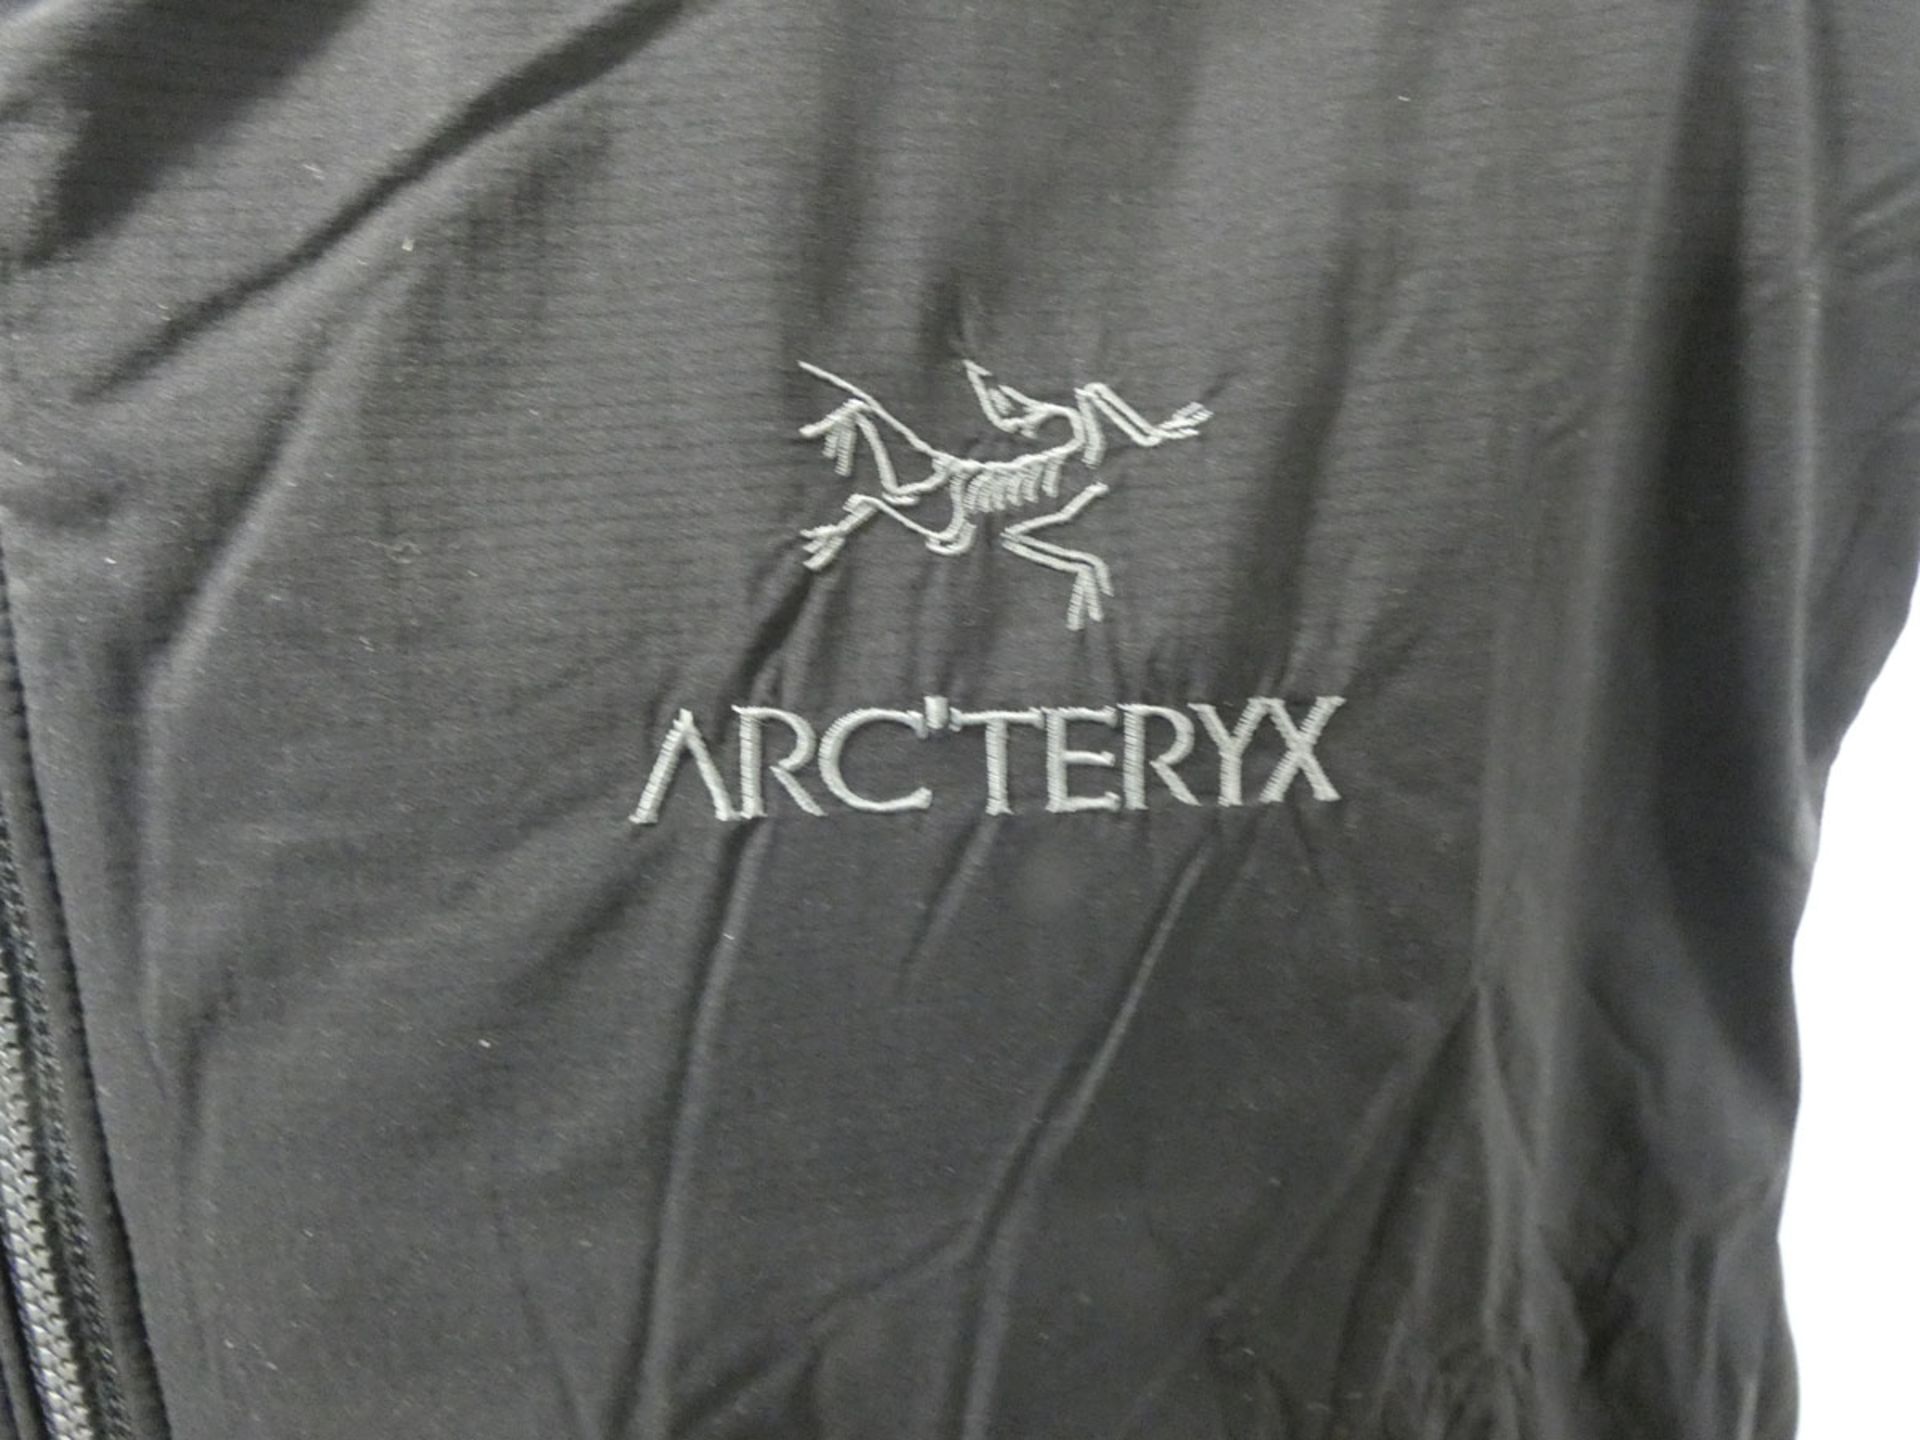 Arc'teryx men's atom LT vest jacket in black size XL (Mannequin not included) - Image 2 of 3